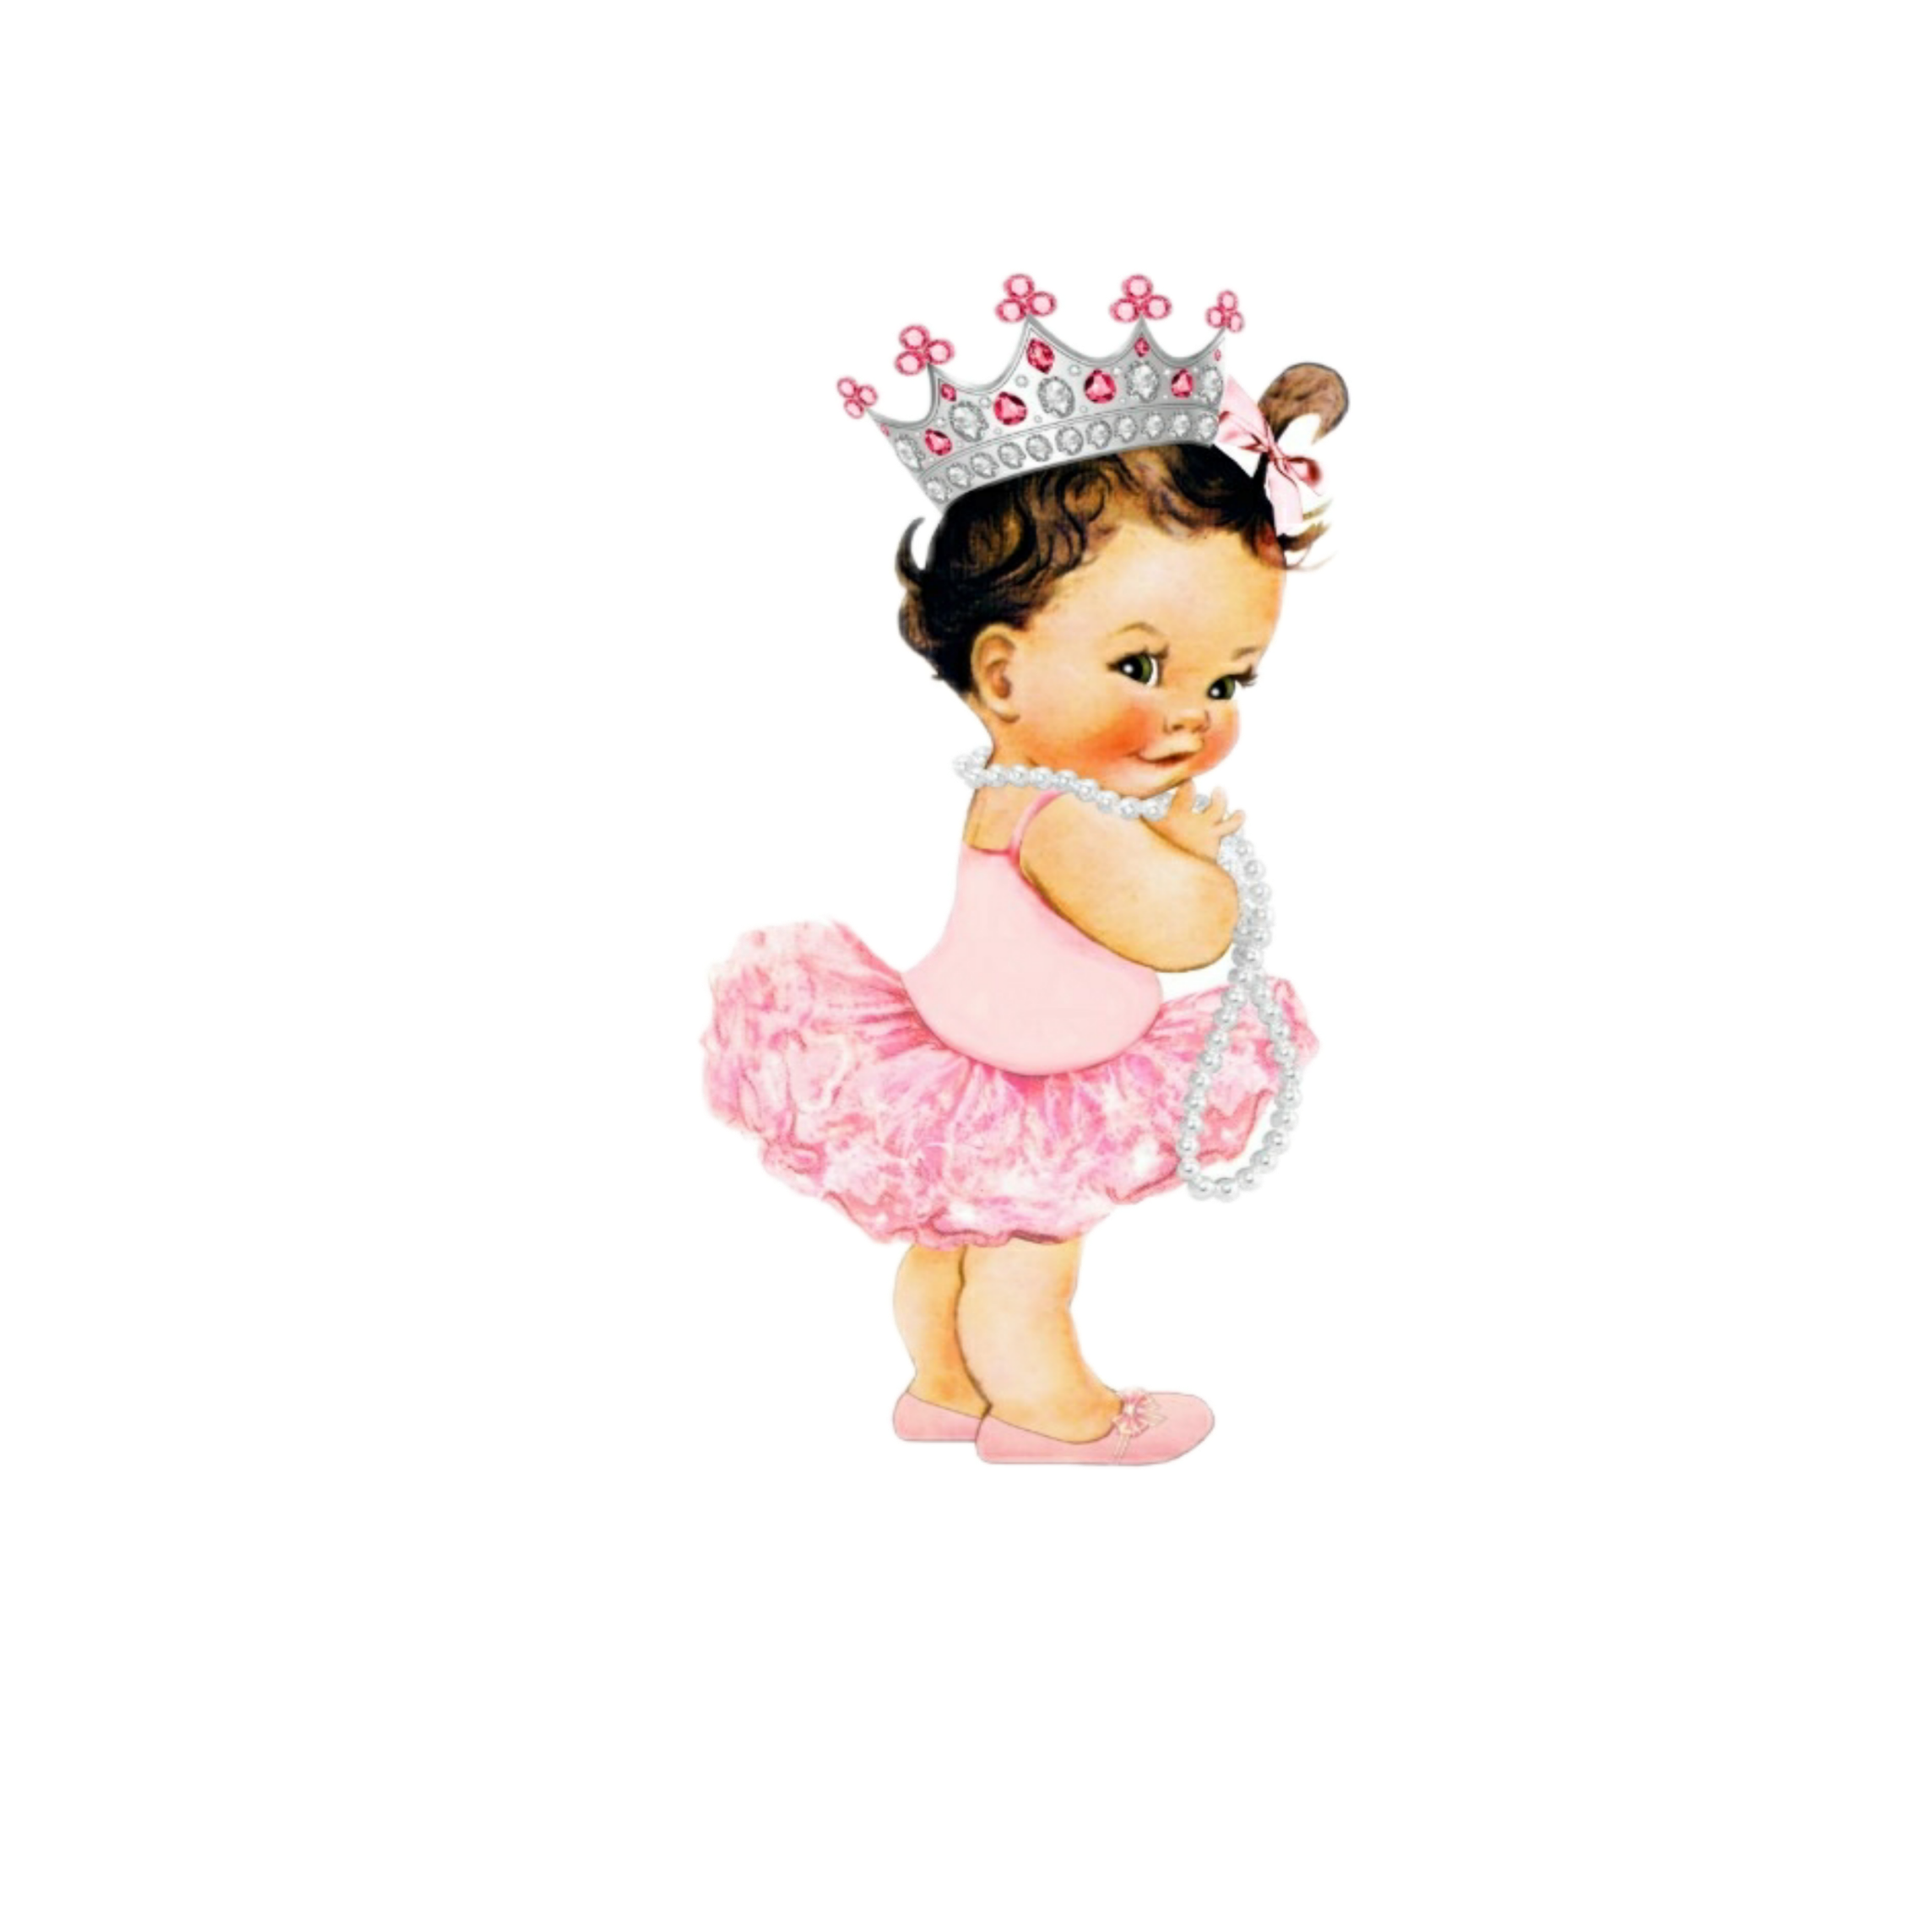 Baby princess nina